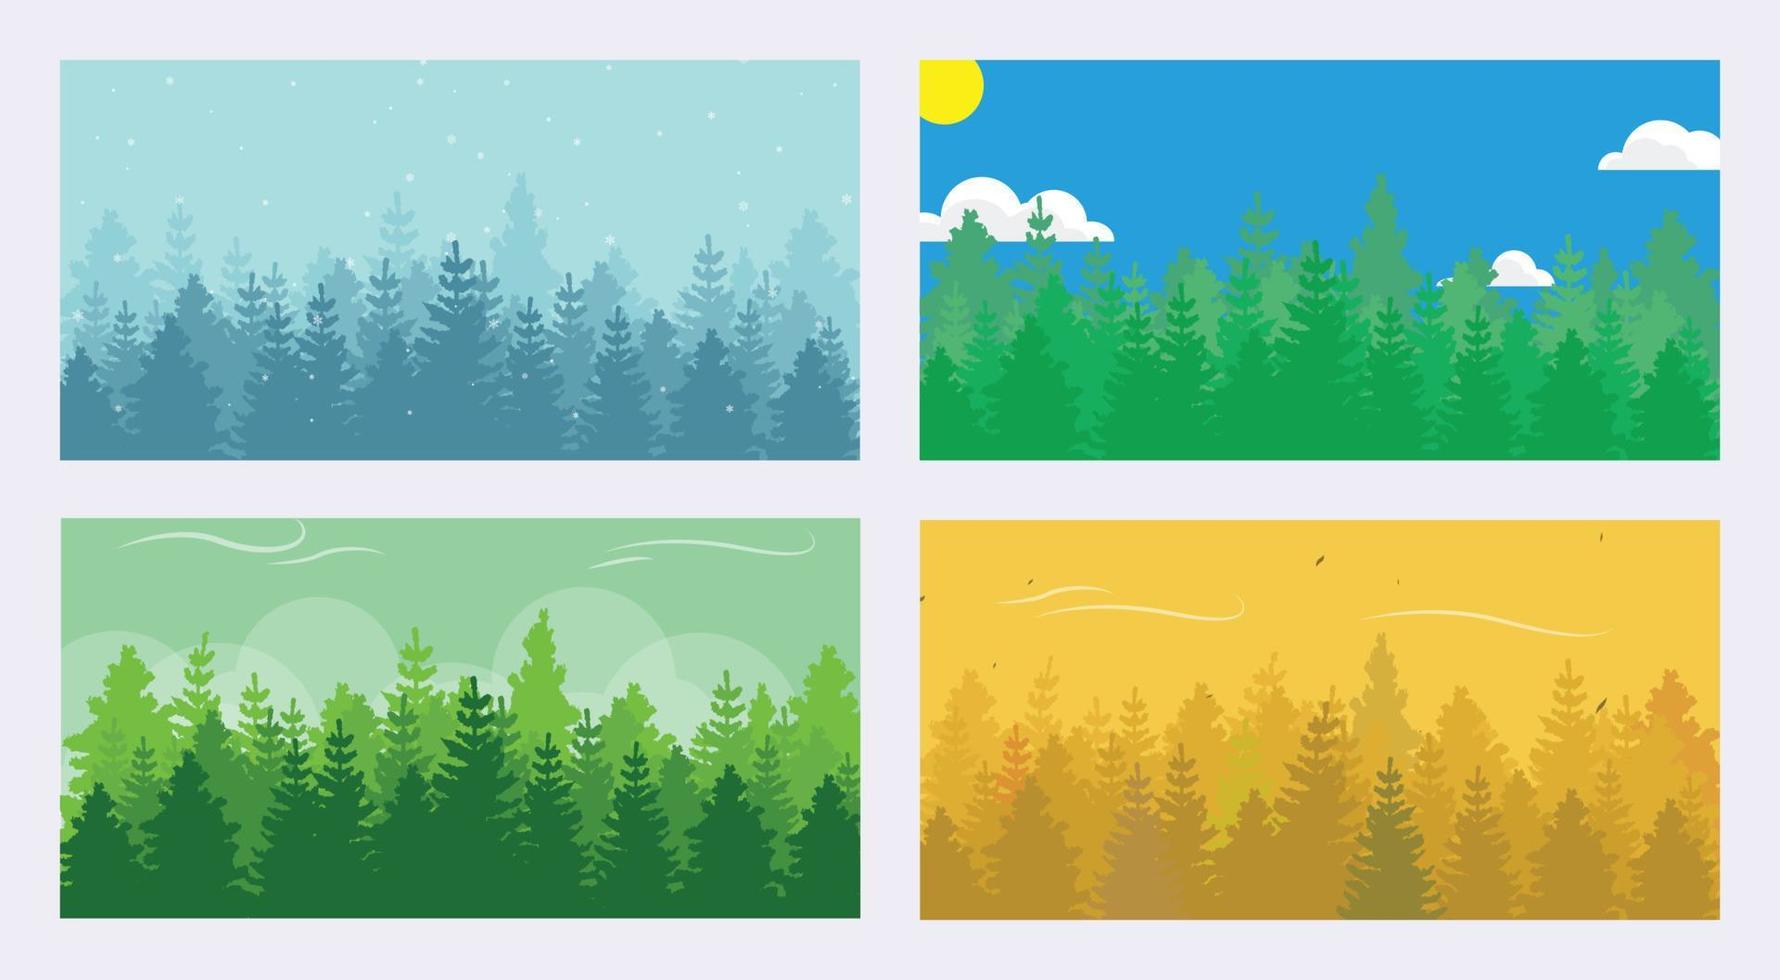 Forrest illustratie in allemaal seizoen winter, lente, zomer, herfst vector eps10